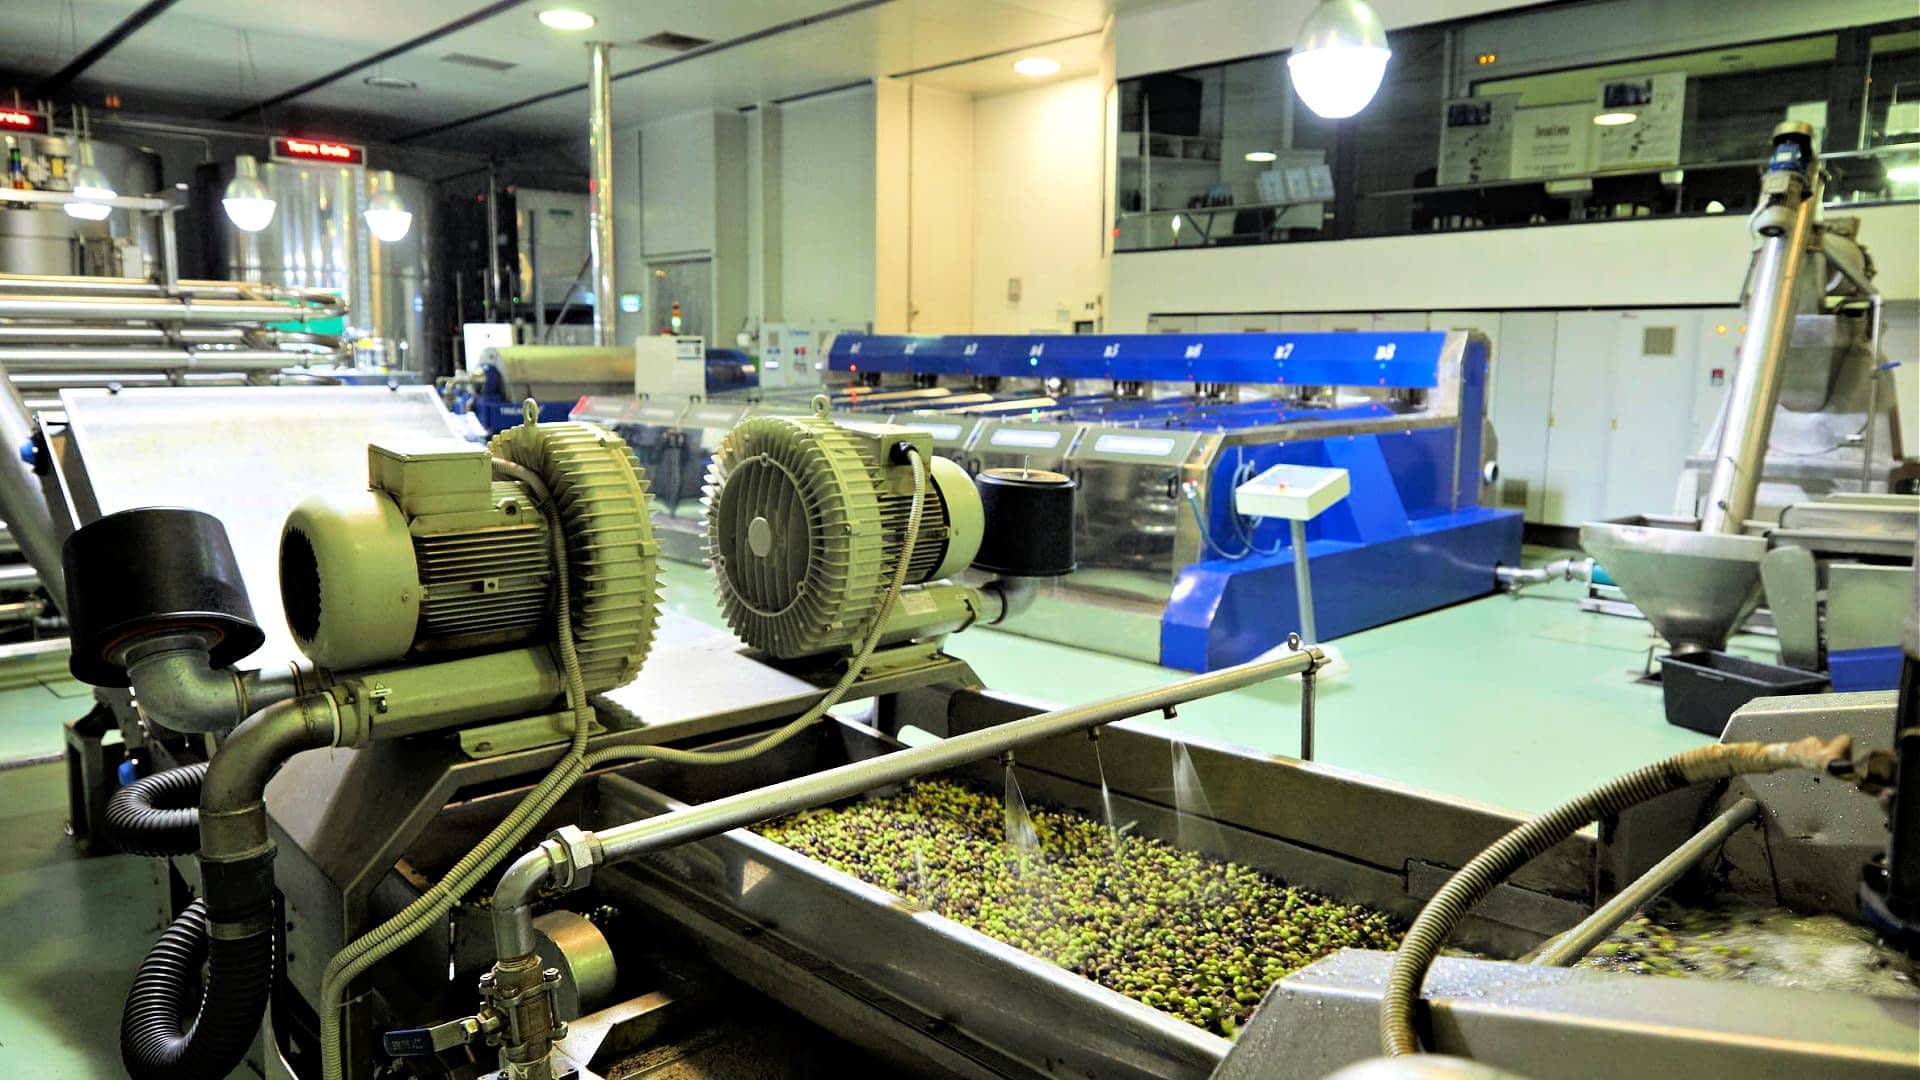 profile-die-beste-olivenölproduktion-der-kretische-produzent-der-nichts-dem-zufall-olivenölzeiten-überlässt